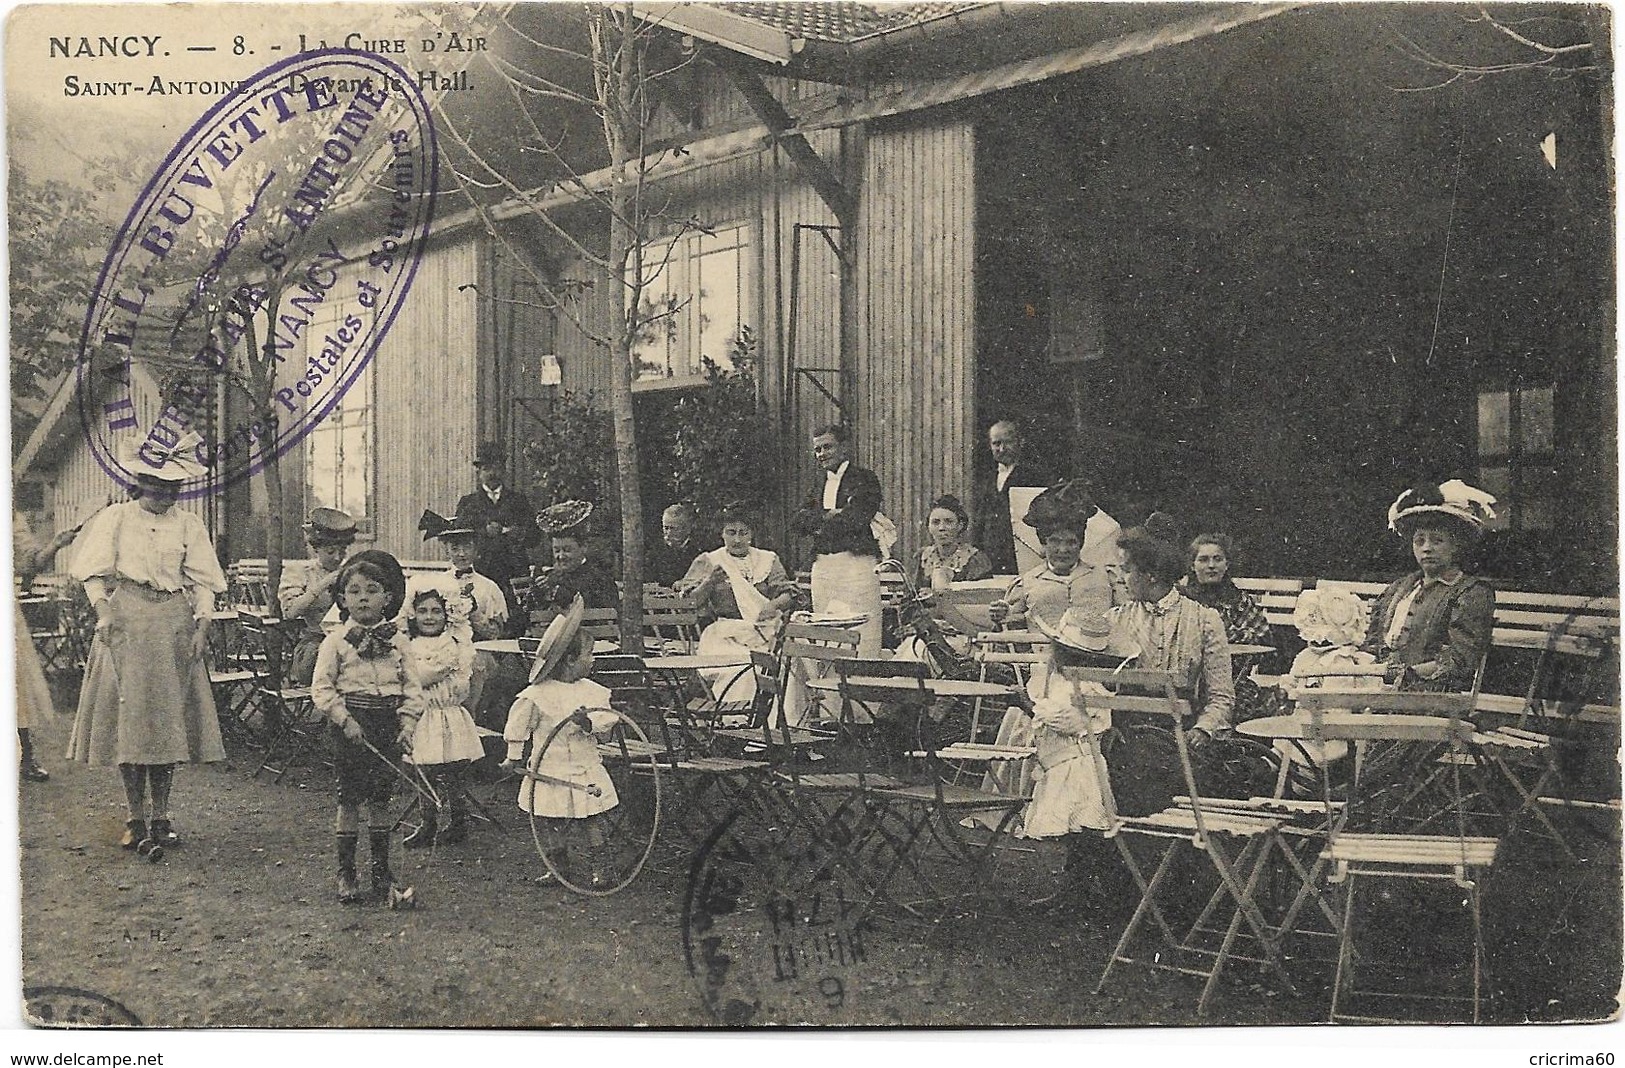 54 - NANCY - La Cure D'Air Saint-Antoine - Devant Le Hall. Belle Animation, CPA Ayant Circulé En 1914. - Nancy